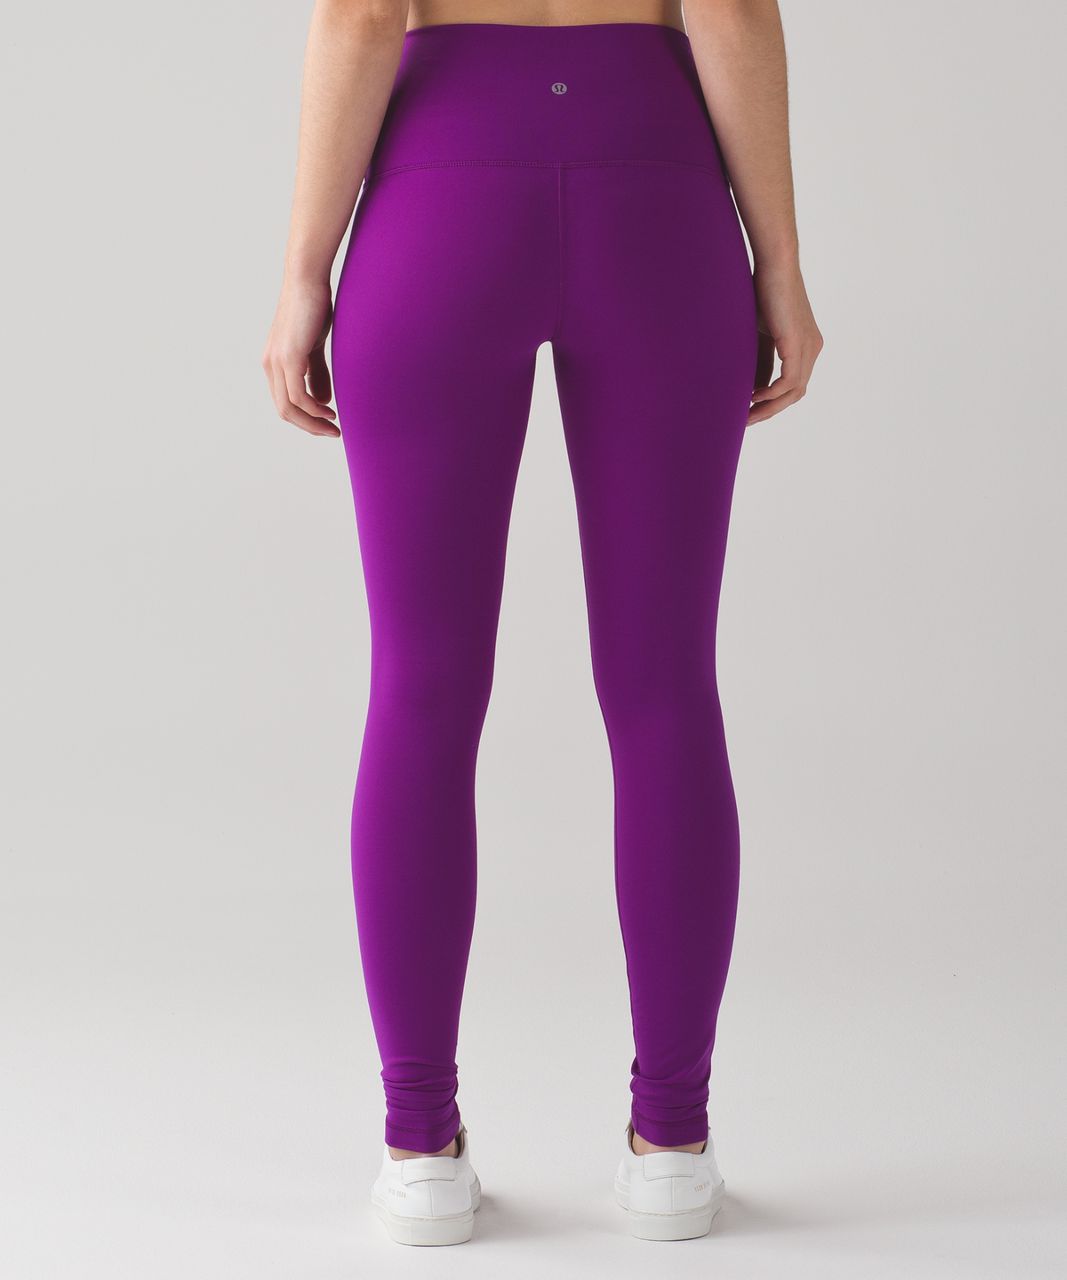 purple lululemon pants